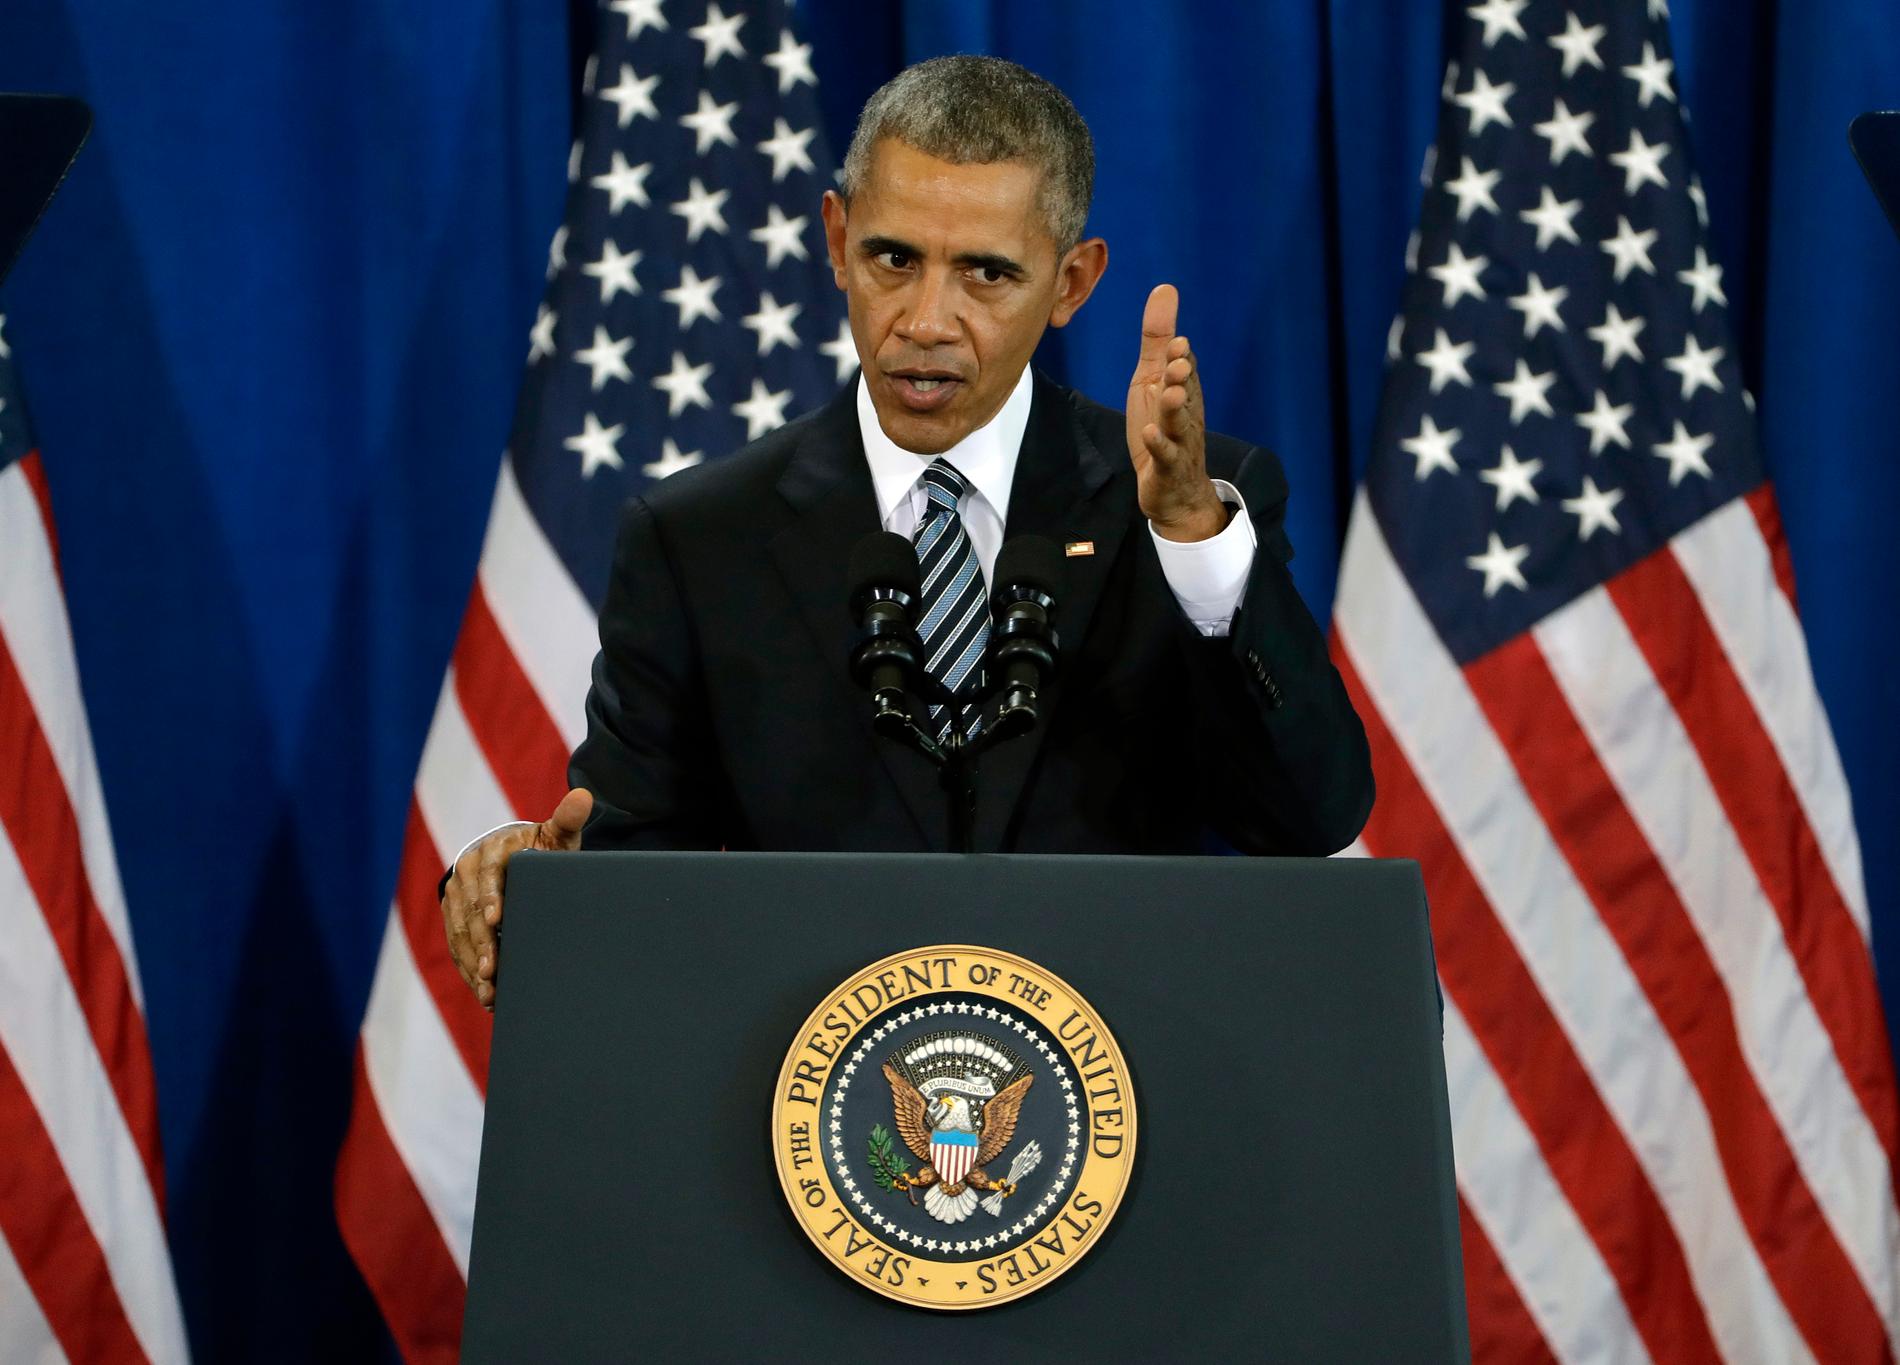 Med bara dagar kvar som USA:s president jobbar Barack Obama hårt för att få igenom sin politik.